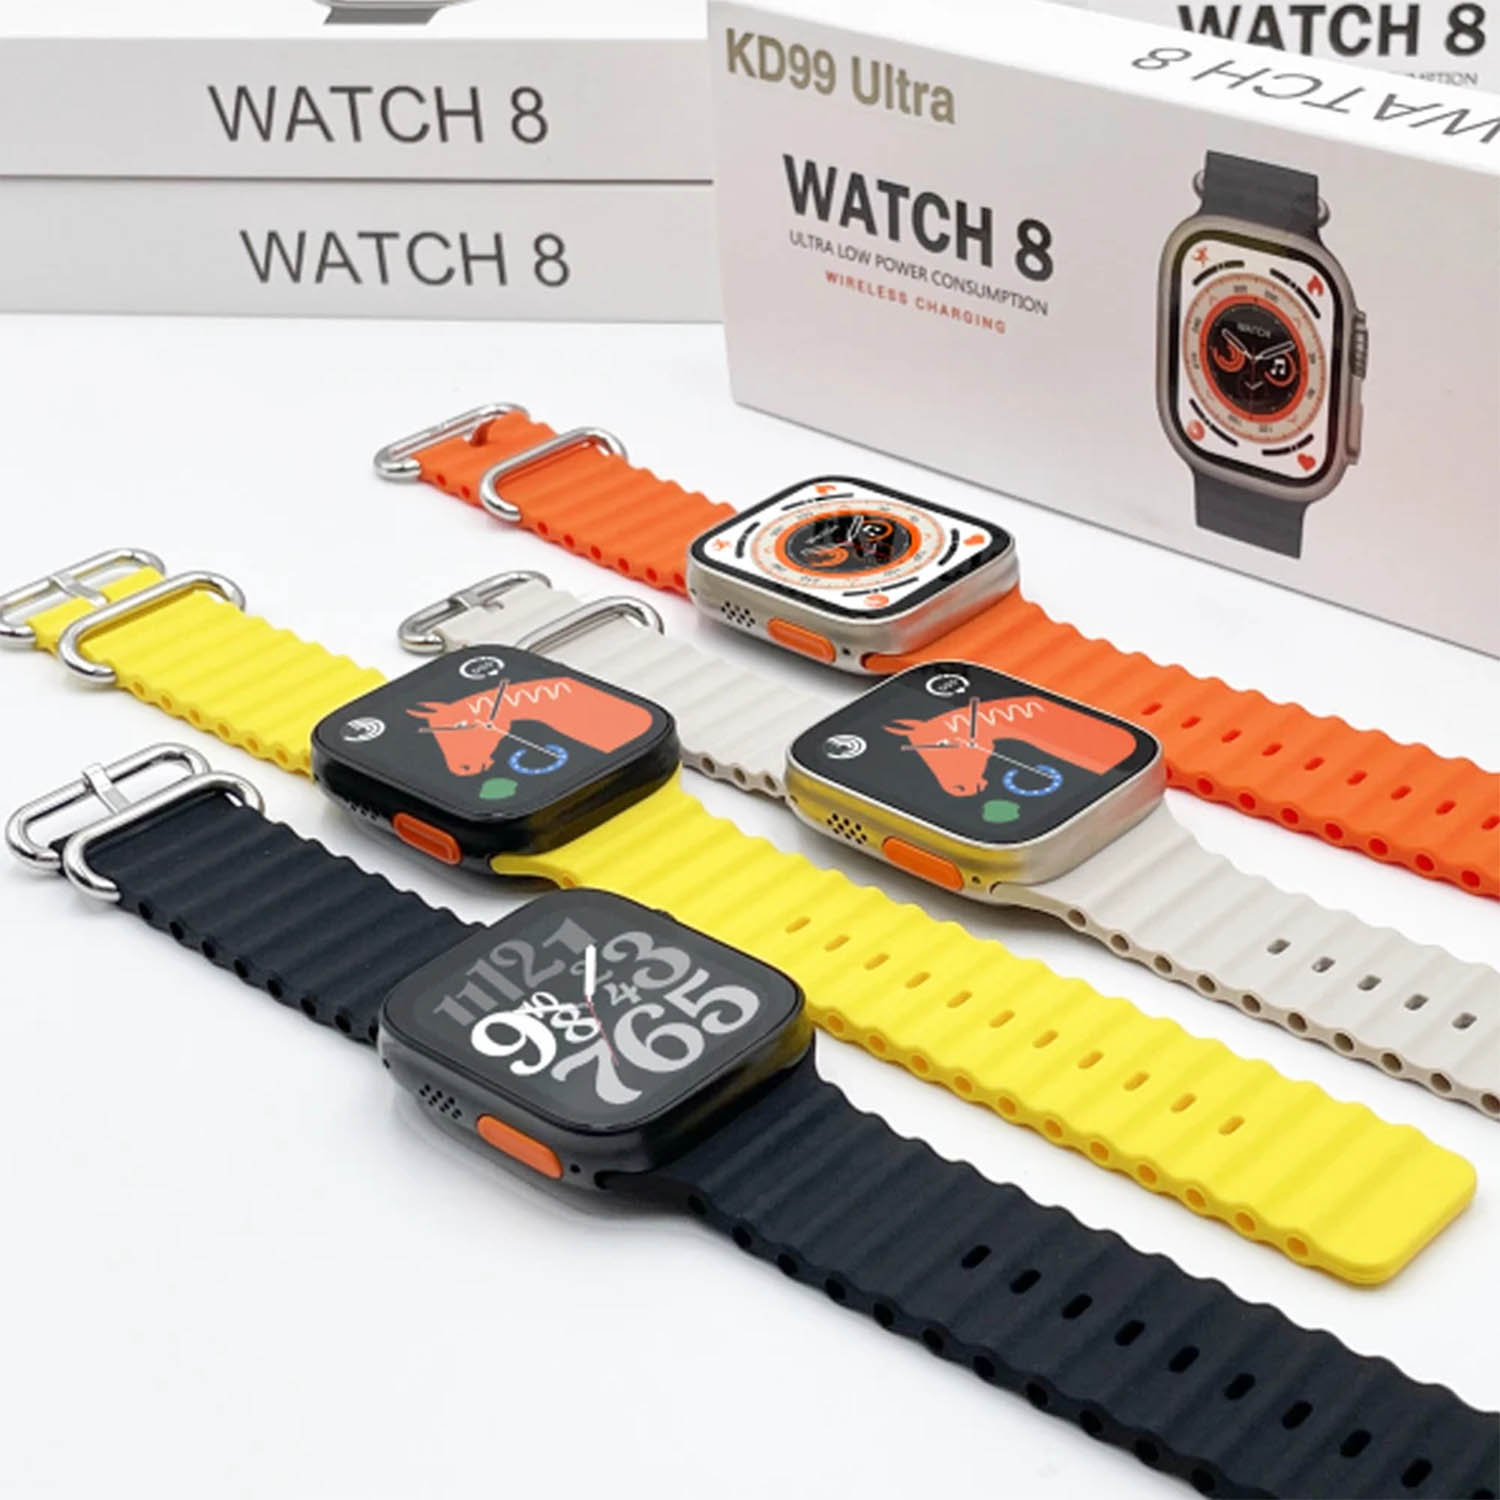 KD99 Smart Watch